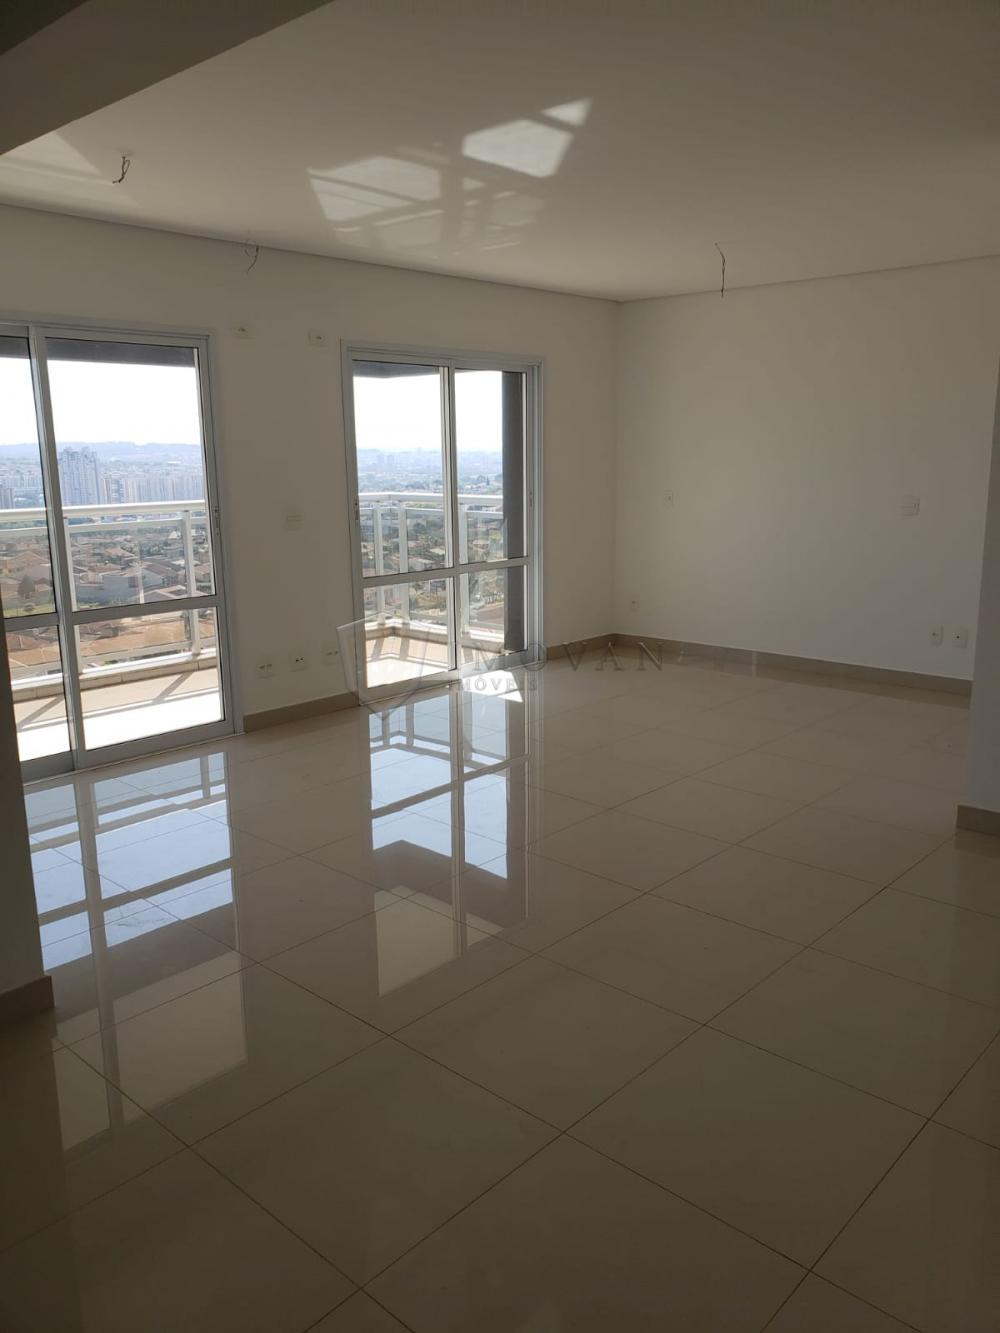 Comprar Apartamento / Padrão em Ribeirão Preto R$ 410.000,00 - Foto 3